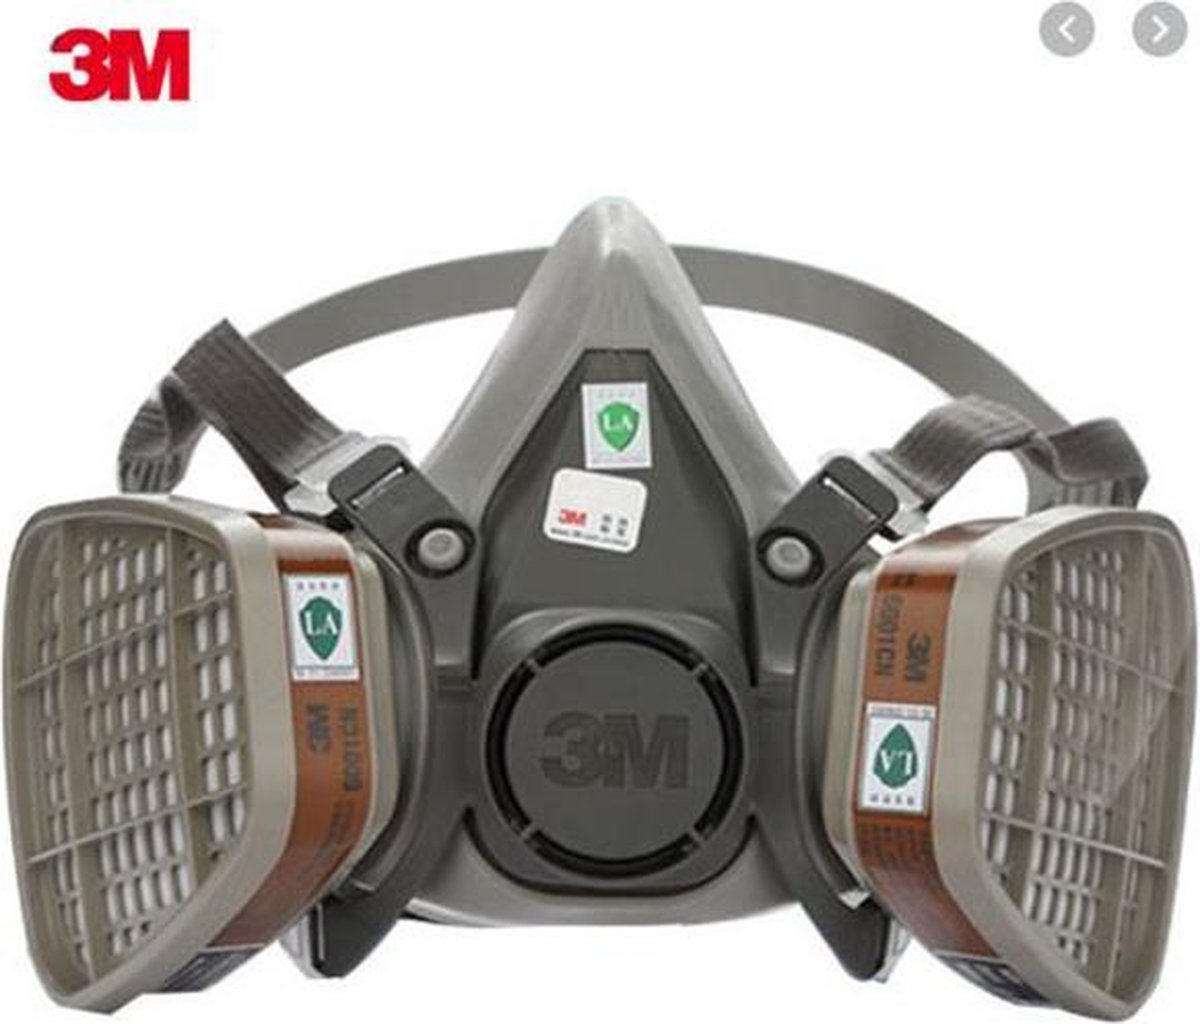 Gasmasker 3M beveiligings schilder masker 3 in suit een geheel compleet systeem | bol.com